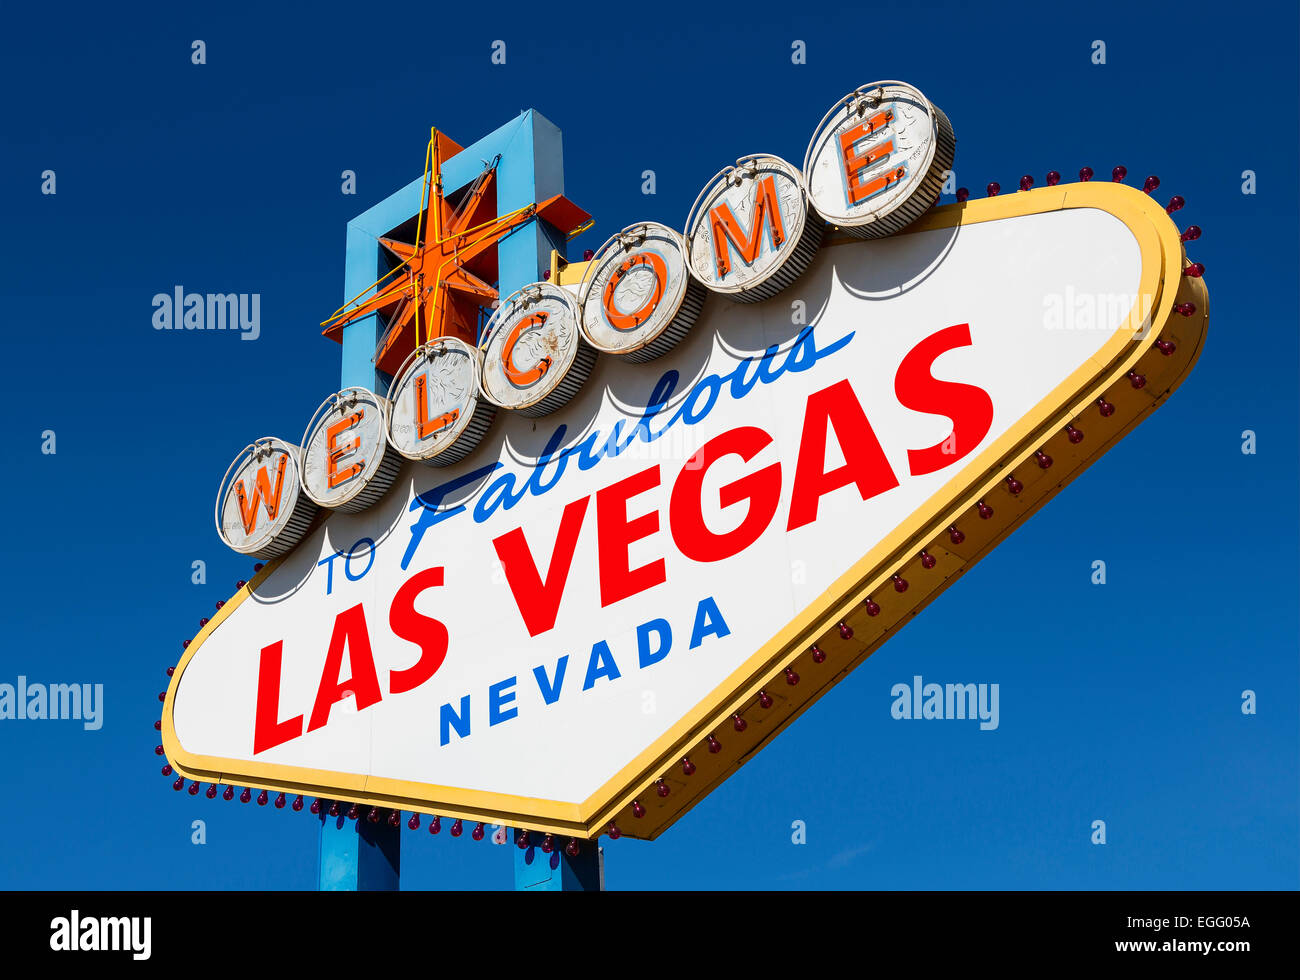 Cartel de bienvenida a Las Vegas Foto de stock